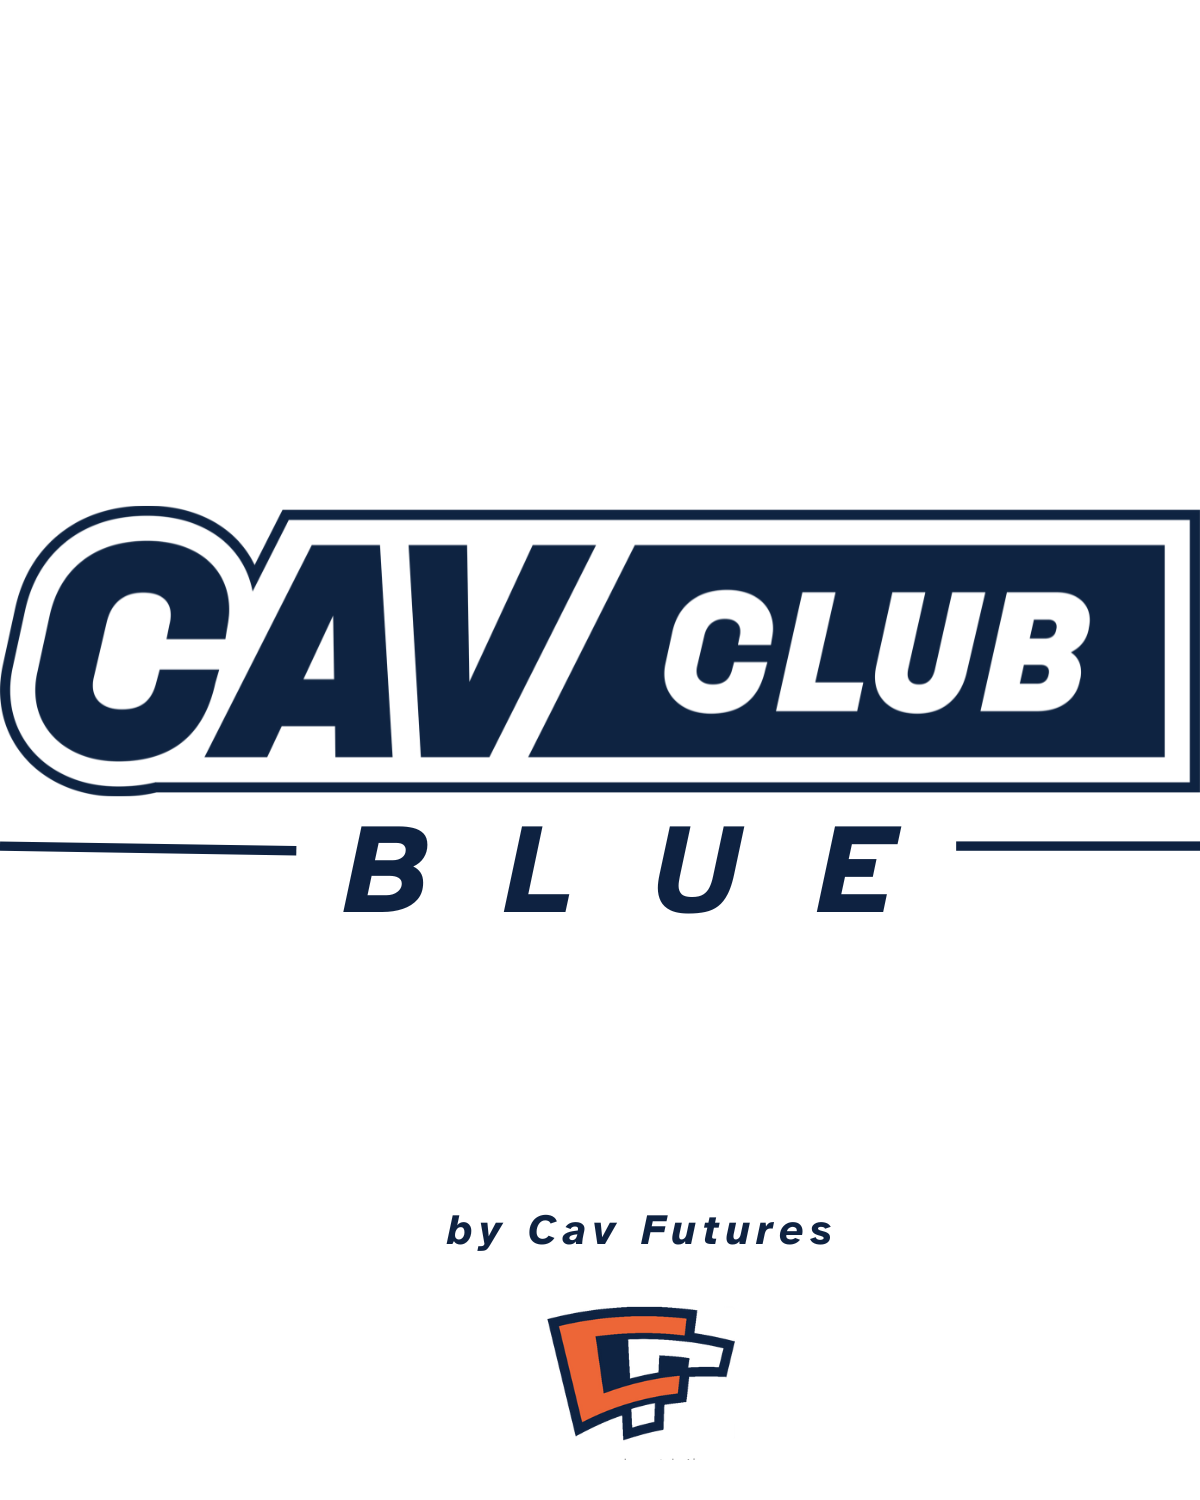 Cav Club Blue